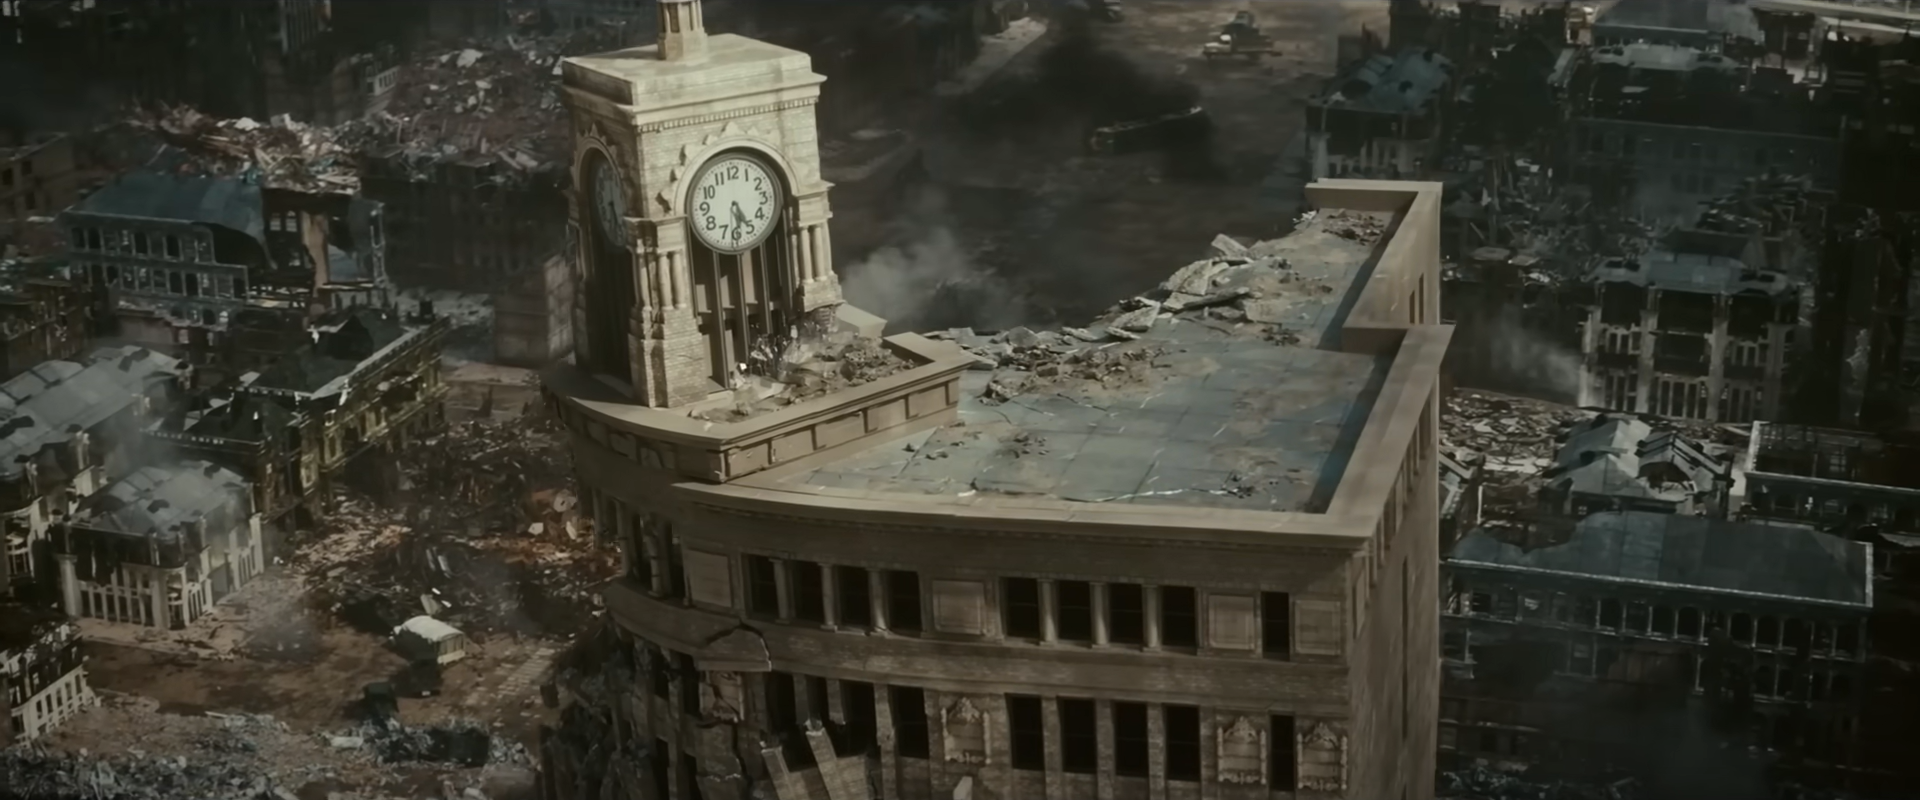 Cena do filme Godzilla Minus One. No centro da imagem aparece um prédio bege destruído, nele tem uma torre com um relógio de ponteiro. No fundo da imagem aparecem escombros de prédios e casas. 